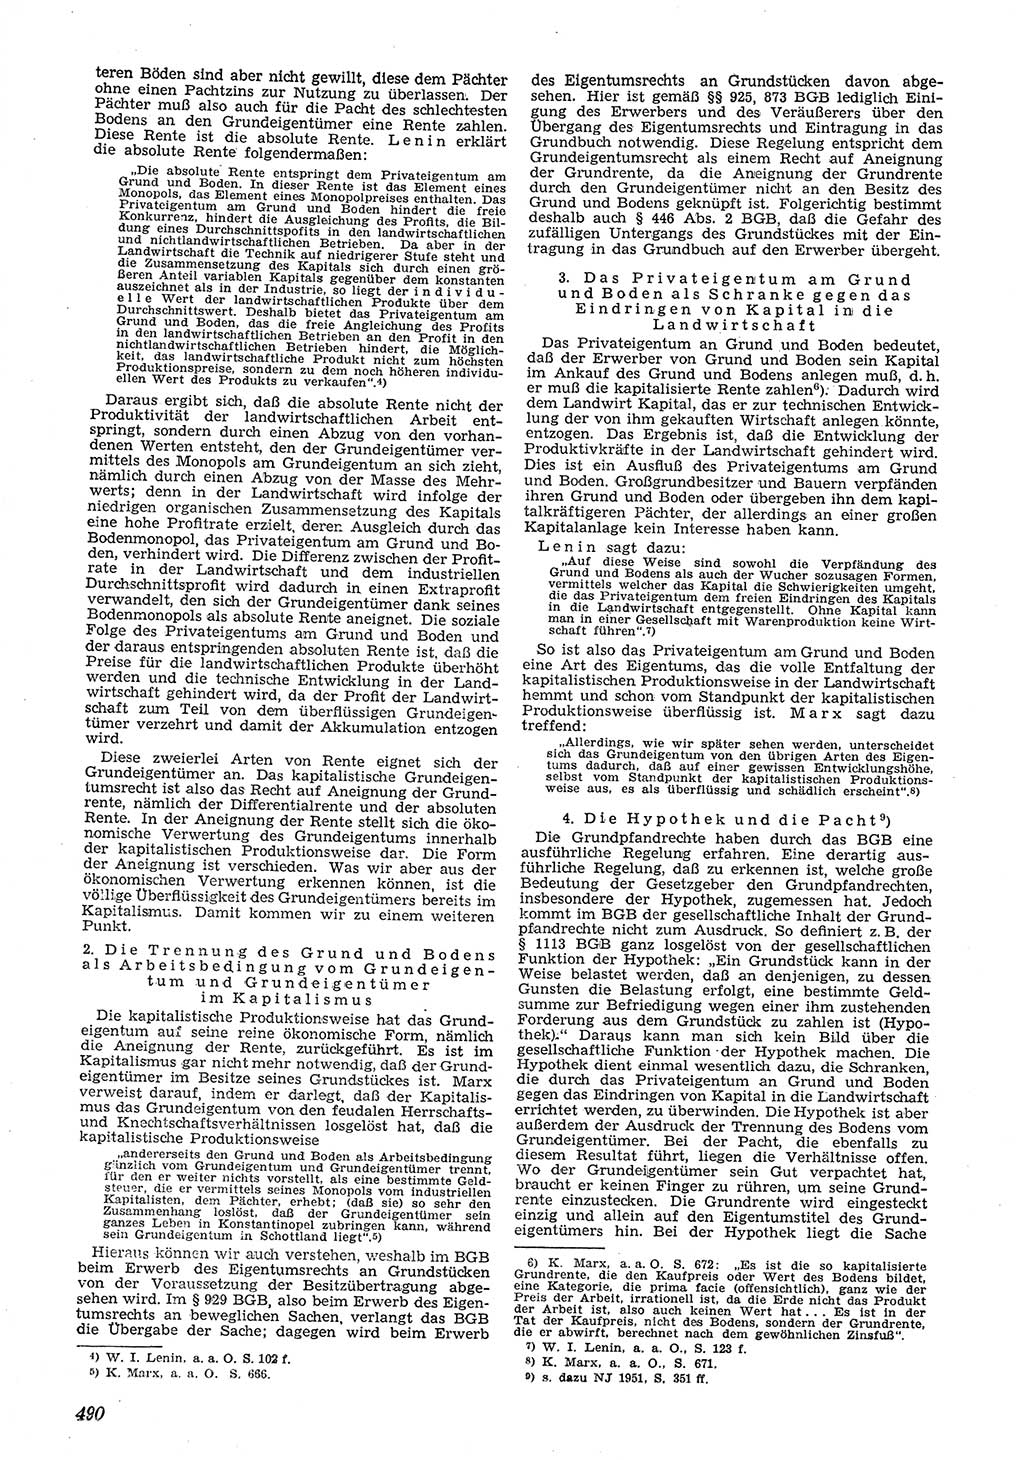 Neue Justiz (NJ), Zeitschrift für Recht und Rechtswissenschaft [Deutsche Demokratische Republik (DDR)], 5. Jahrgang 1951, Seite 490 (NJ DDR 1951, S. 490)